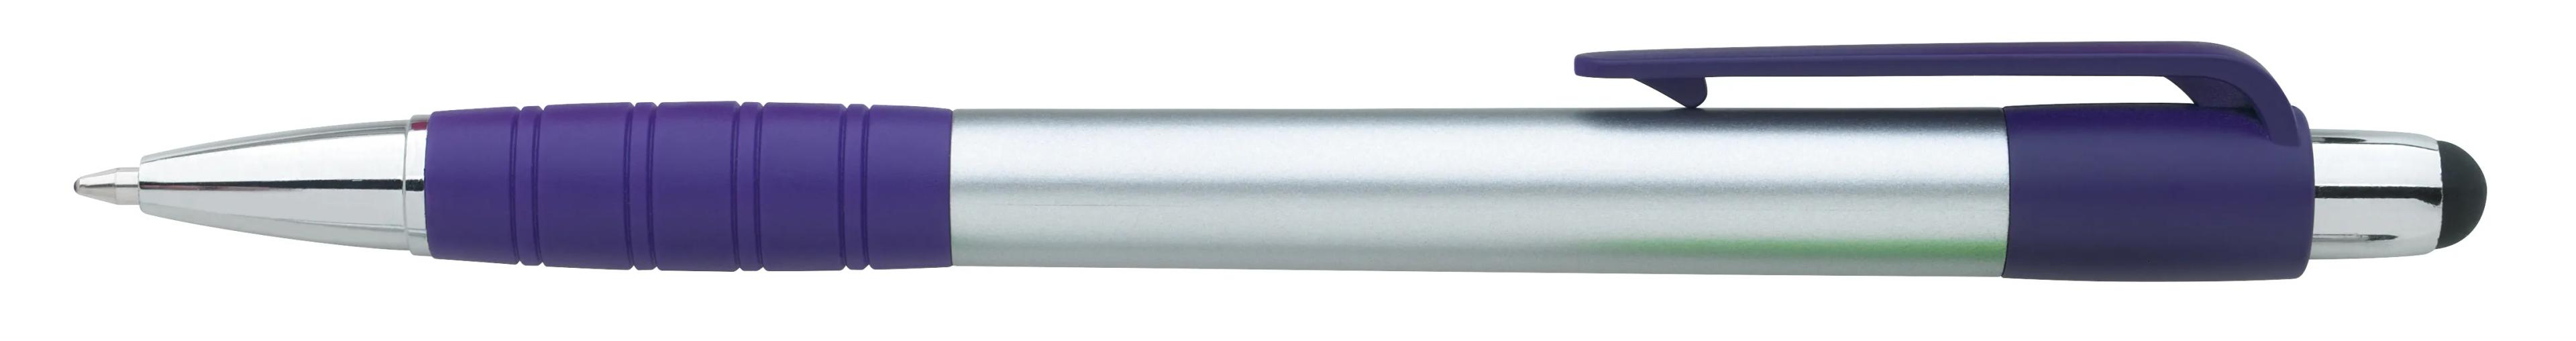 Silver Element Stylus Pen 17 of 53